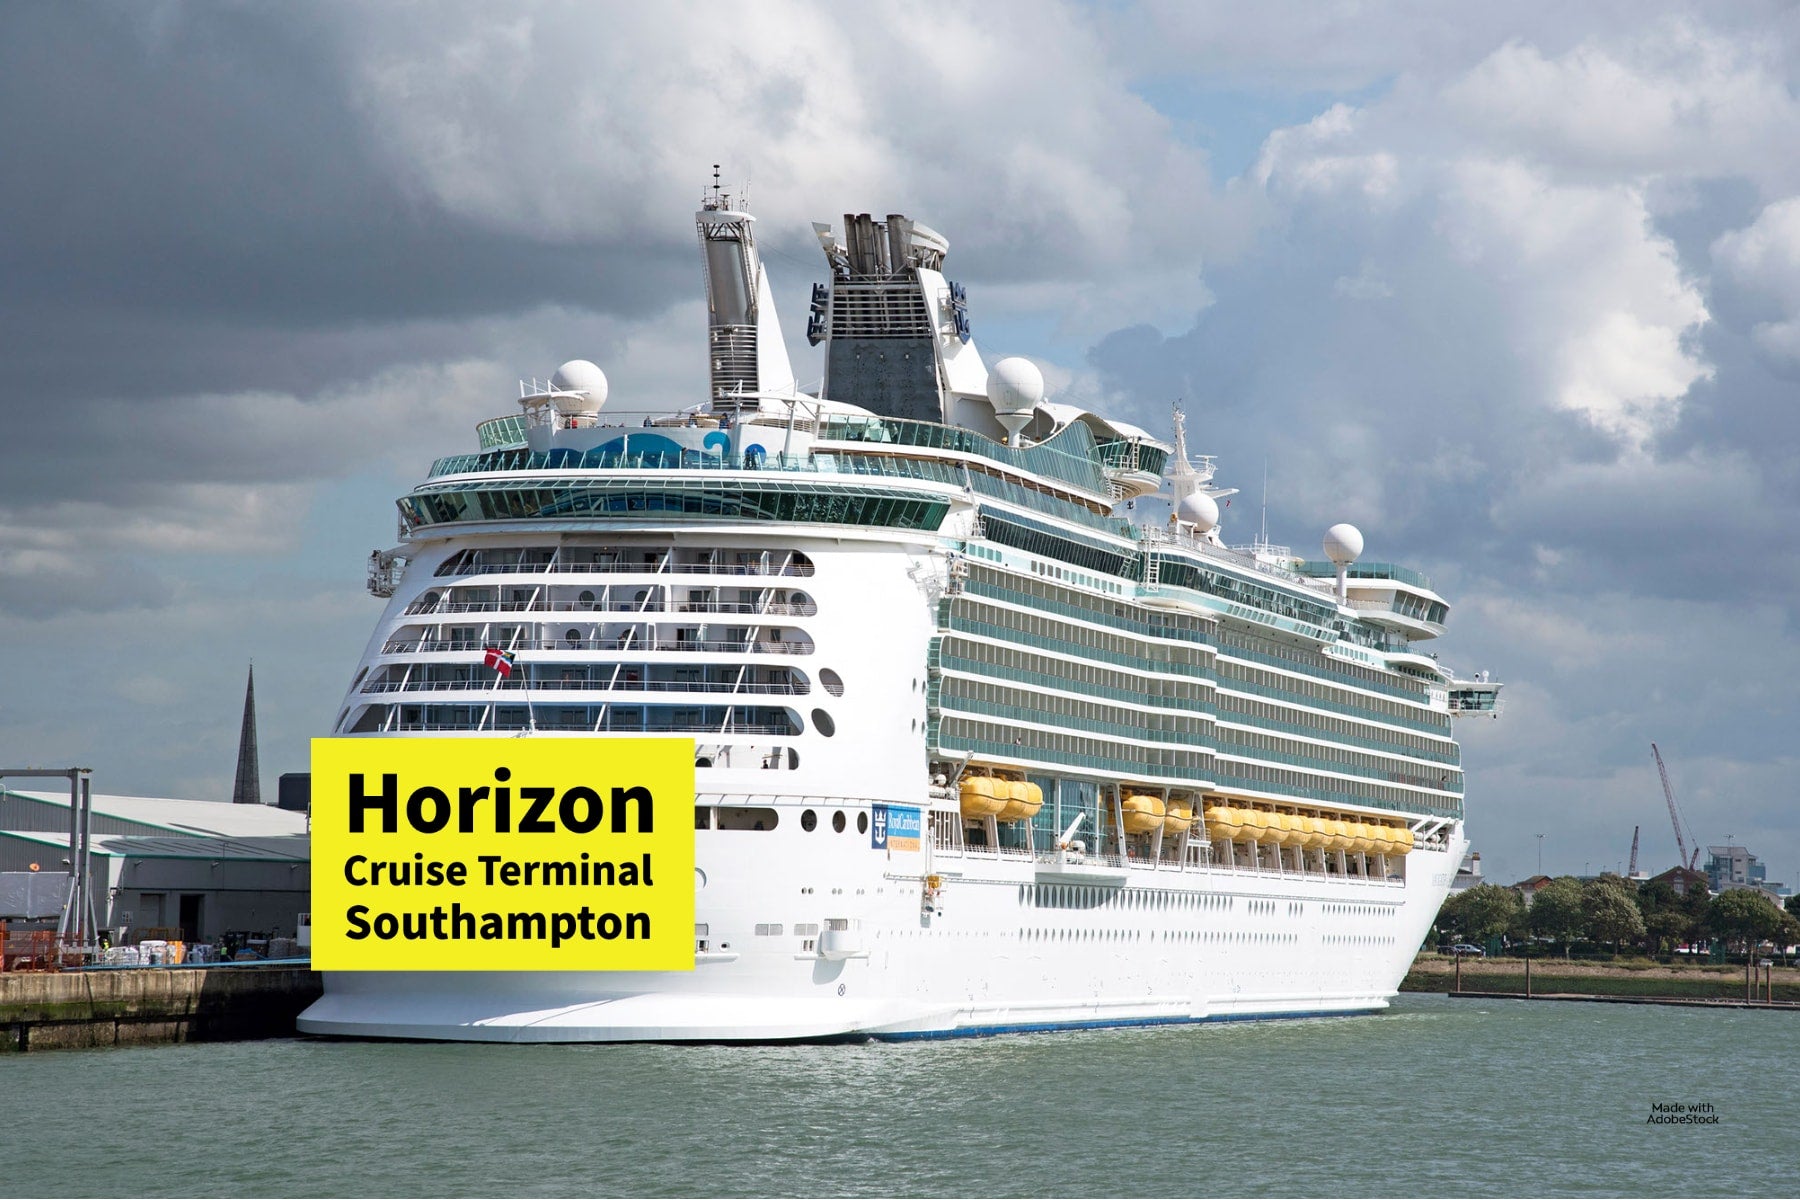 Horizon Cruise Terminal Southampton